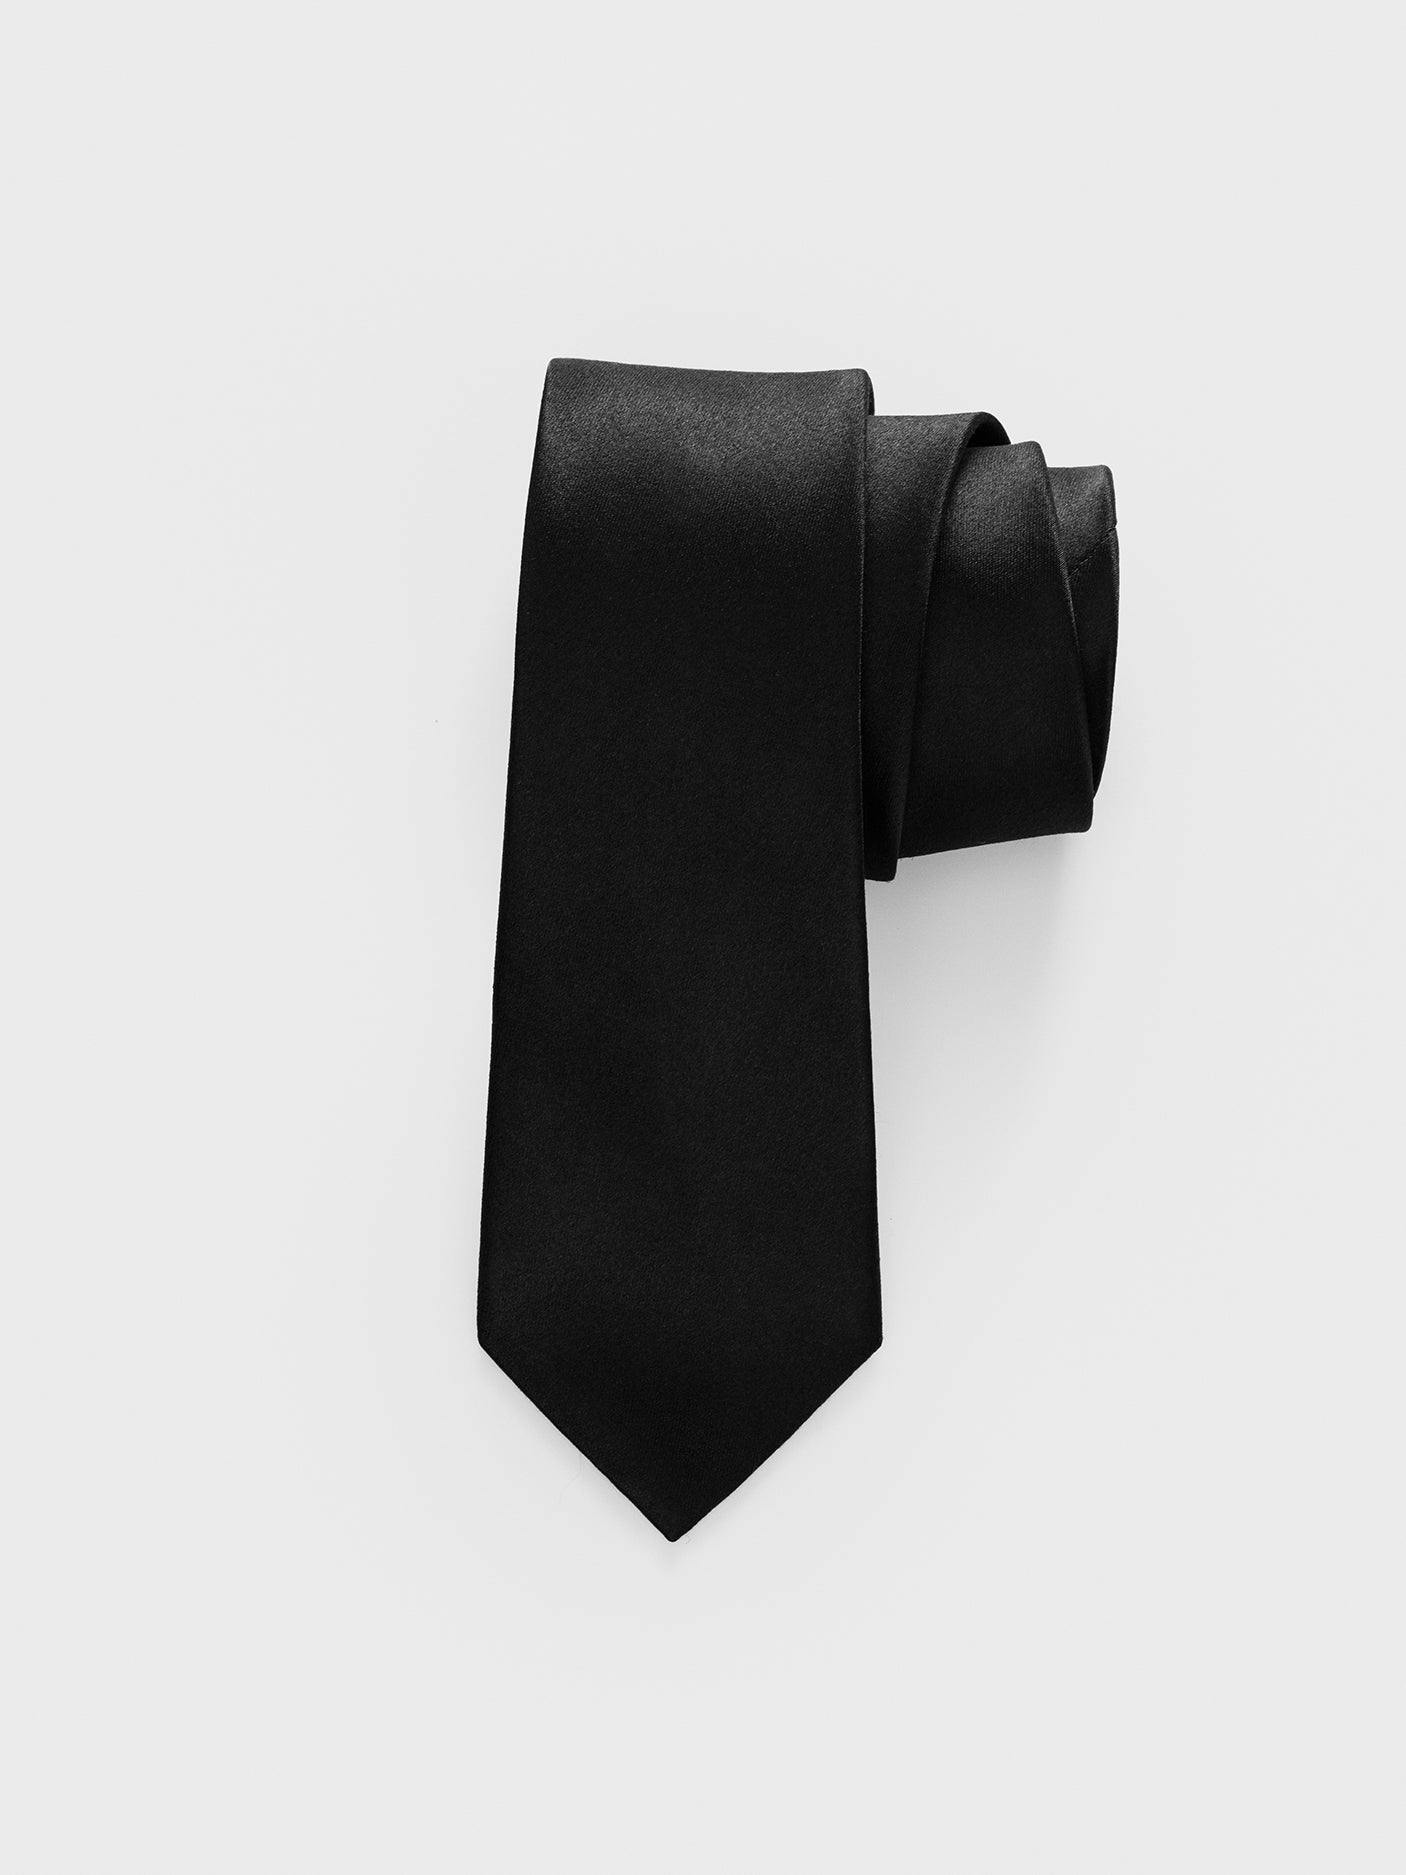 Black Satin Necktie